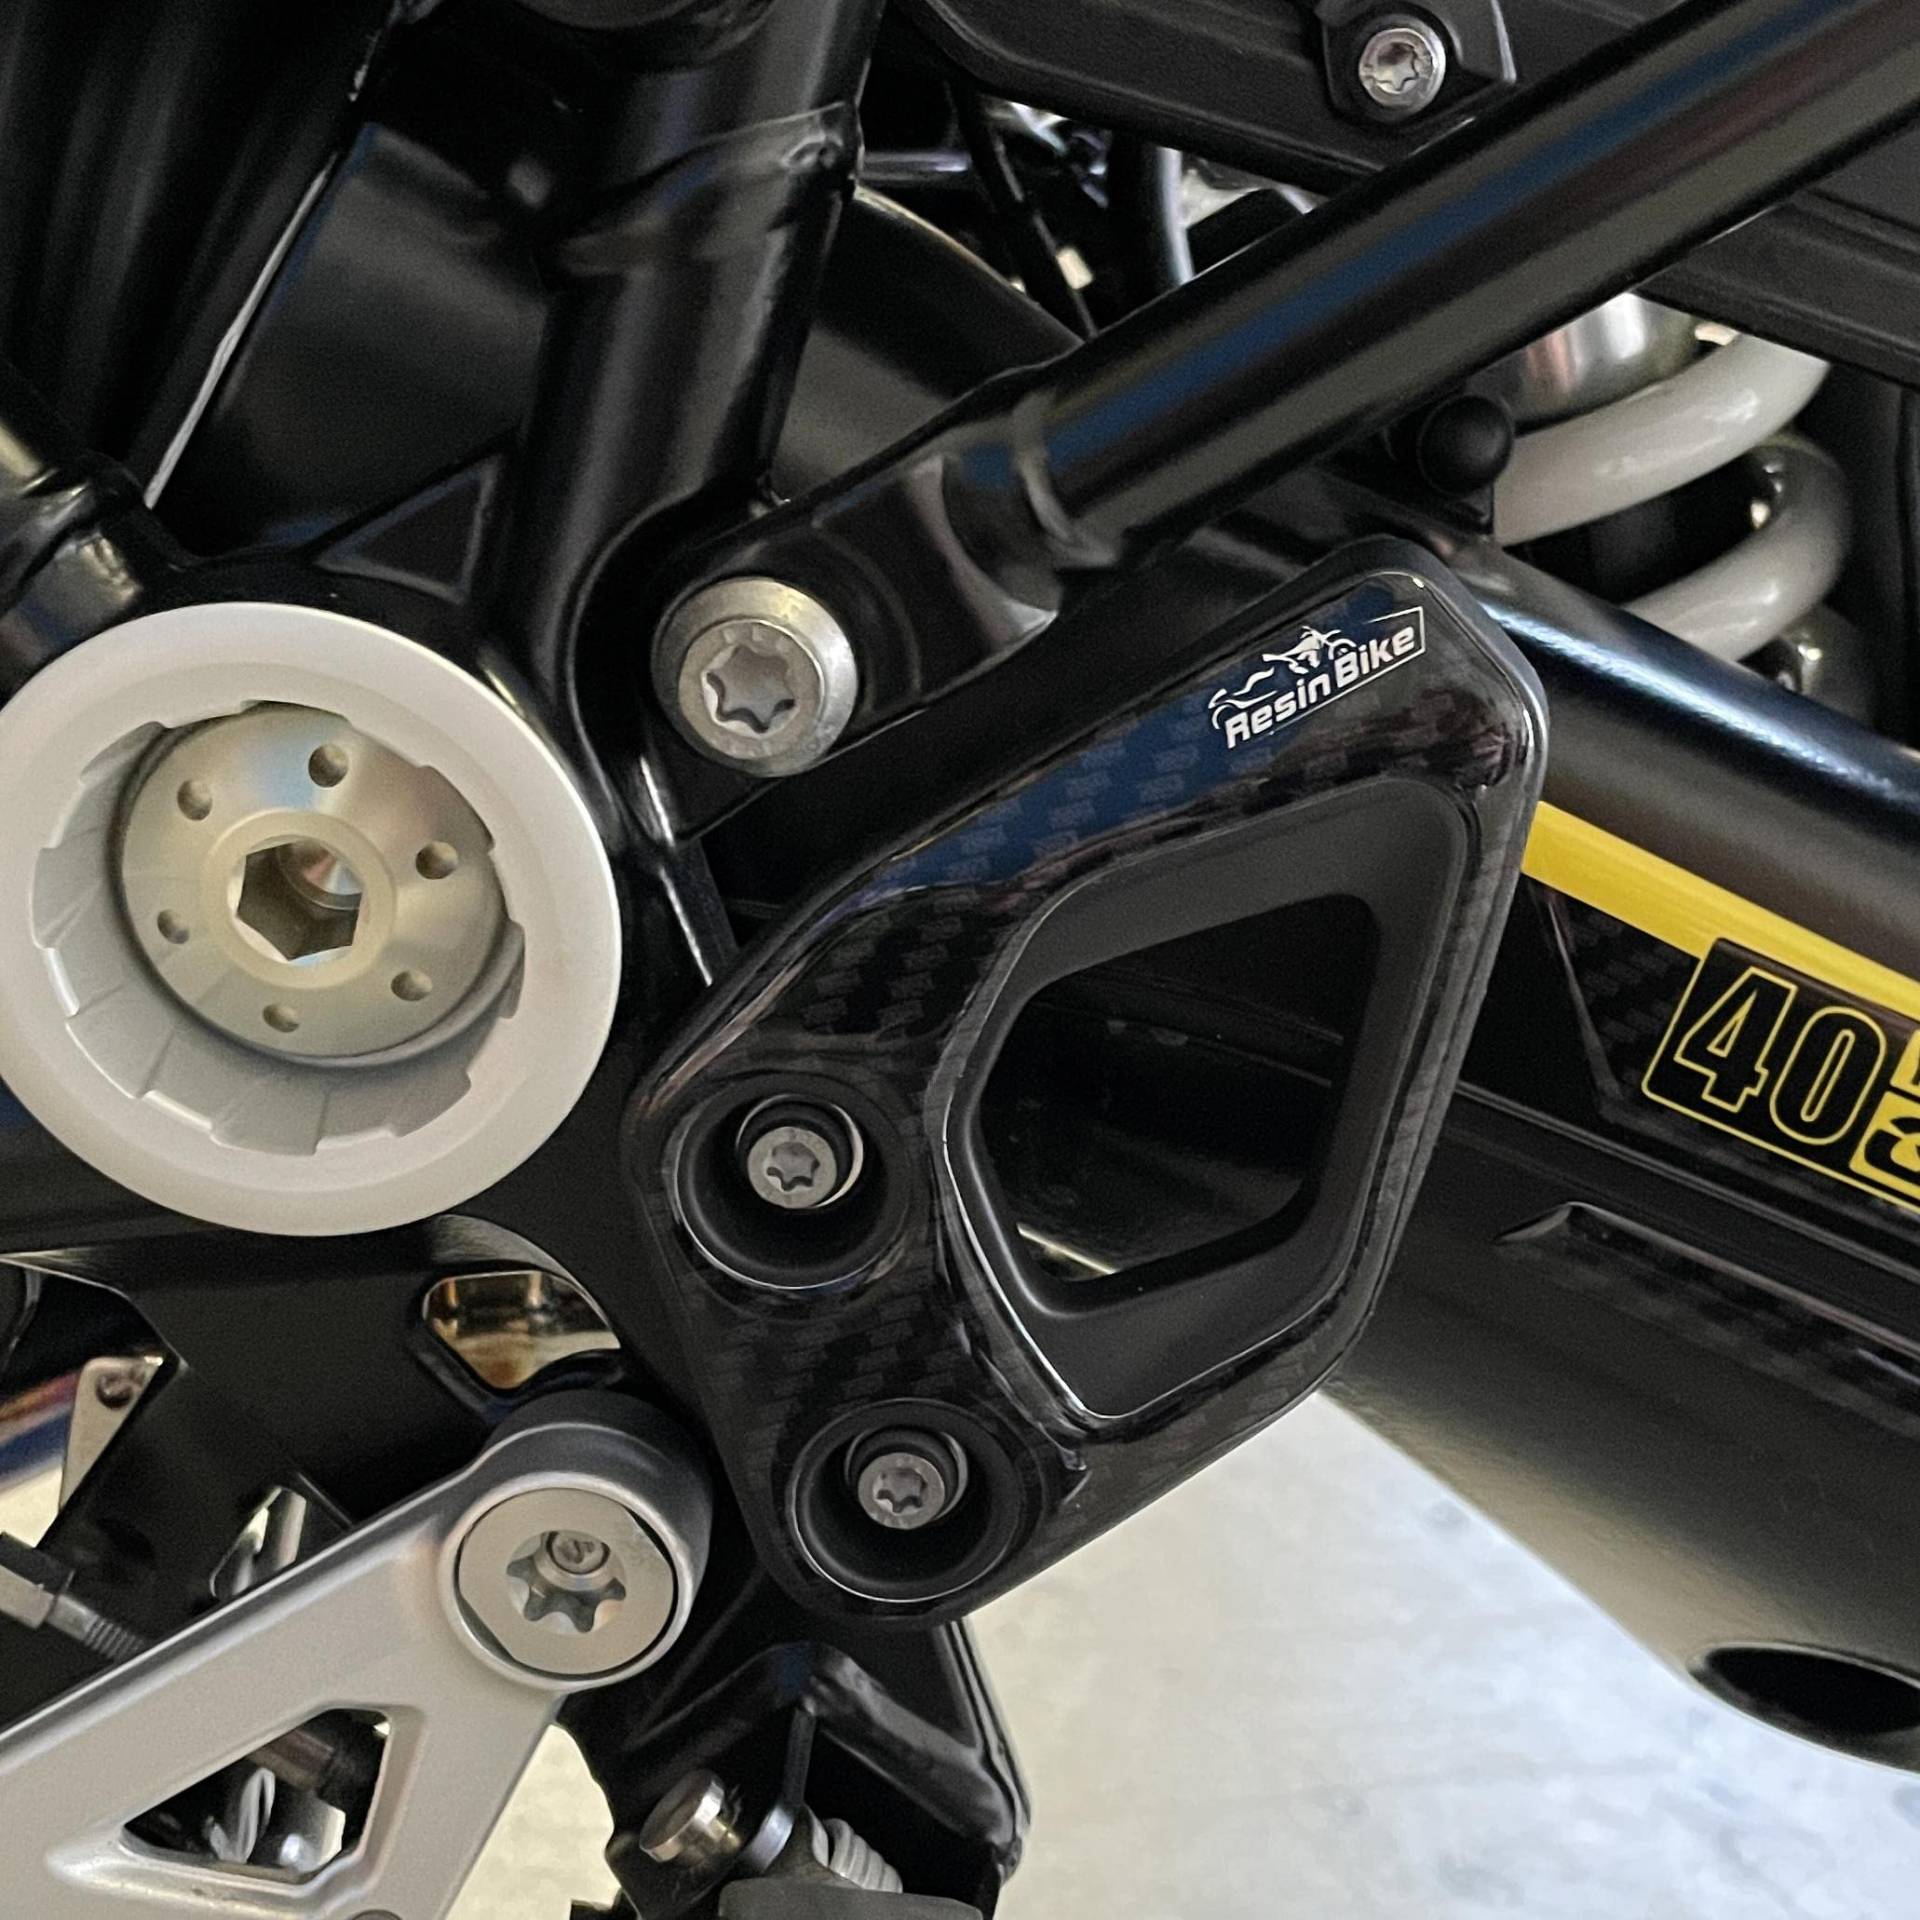 Resin Bike Aufkleber für Motorrad Kompatibel mit BMW R 1250 GS und Adventure 2021 2022. Einstiegsleistenschutz vor Stößen und Kratzern. 3D-Harzklebstoff – Stickers - Made in Italy von Resin Bike